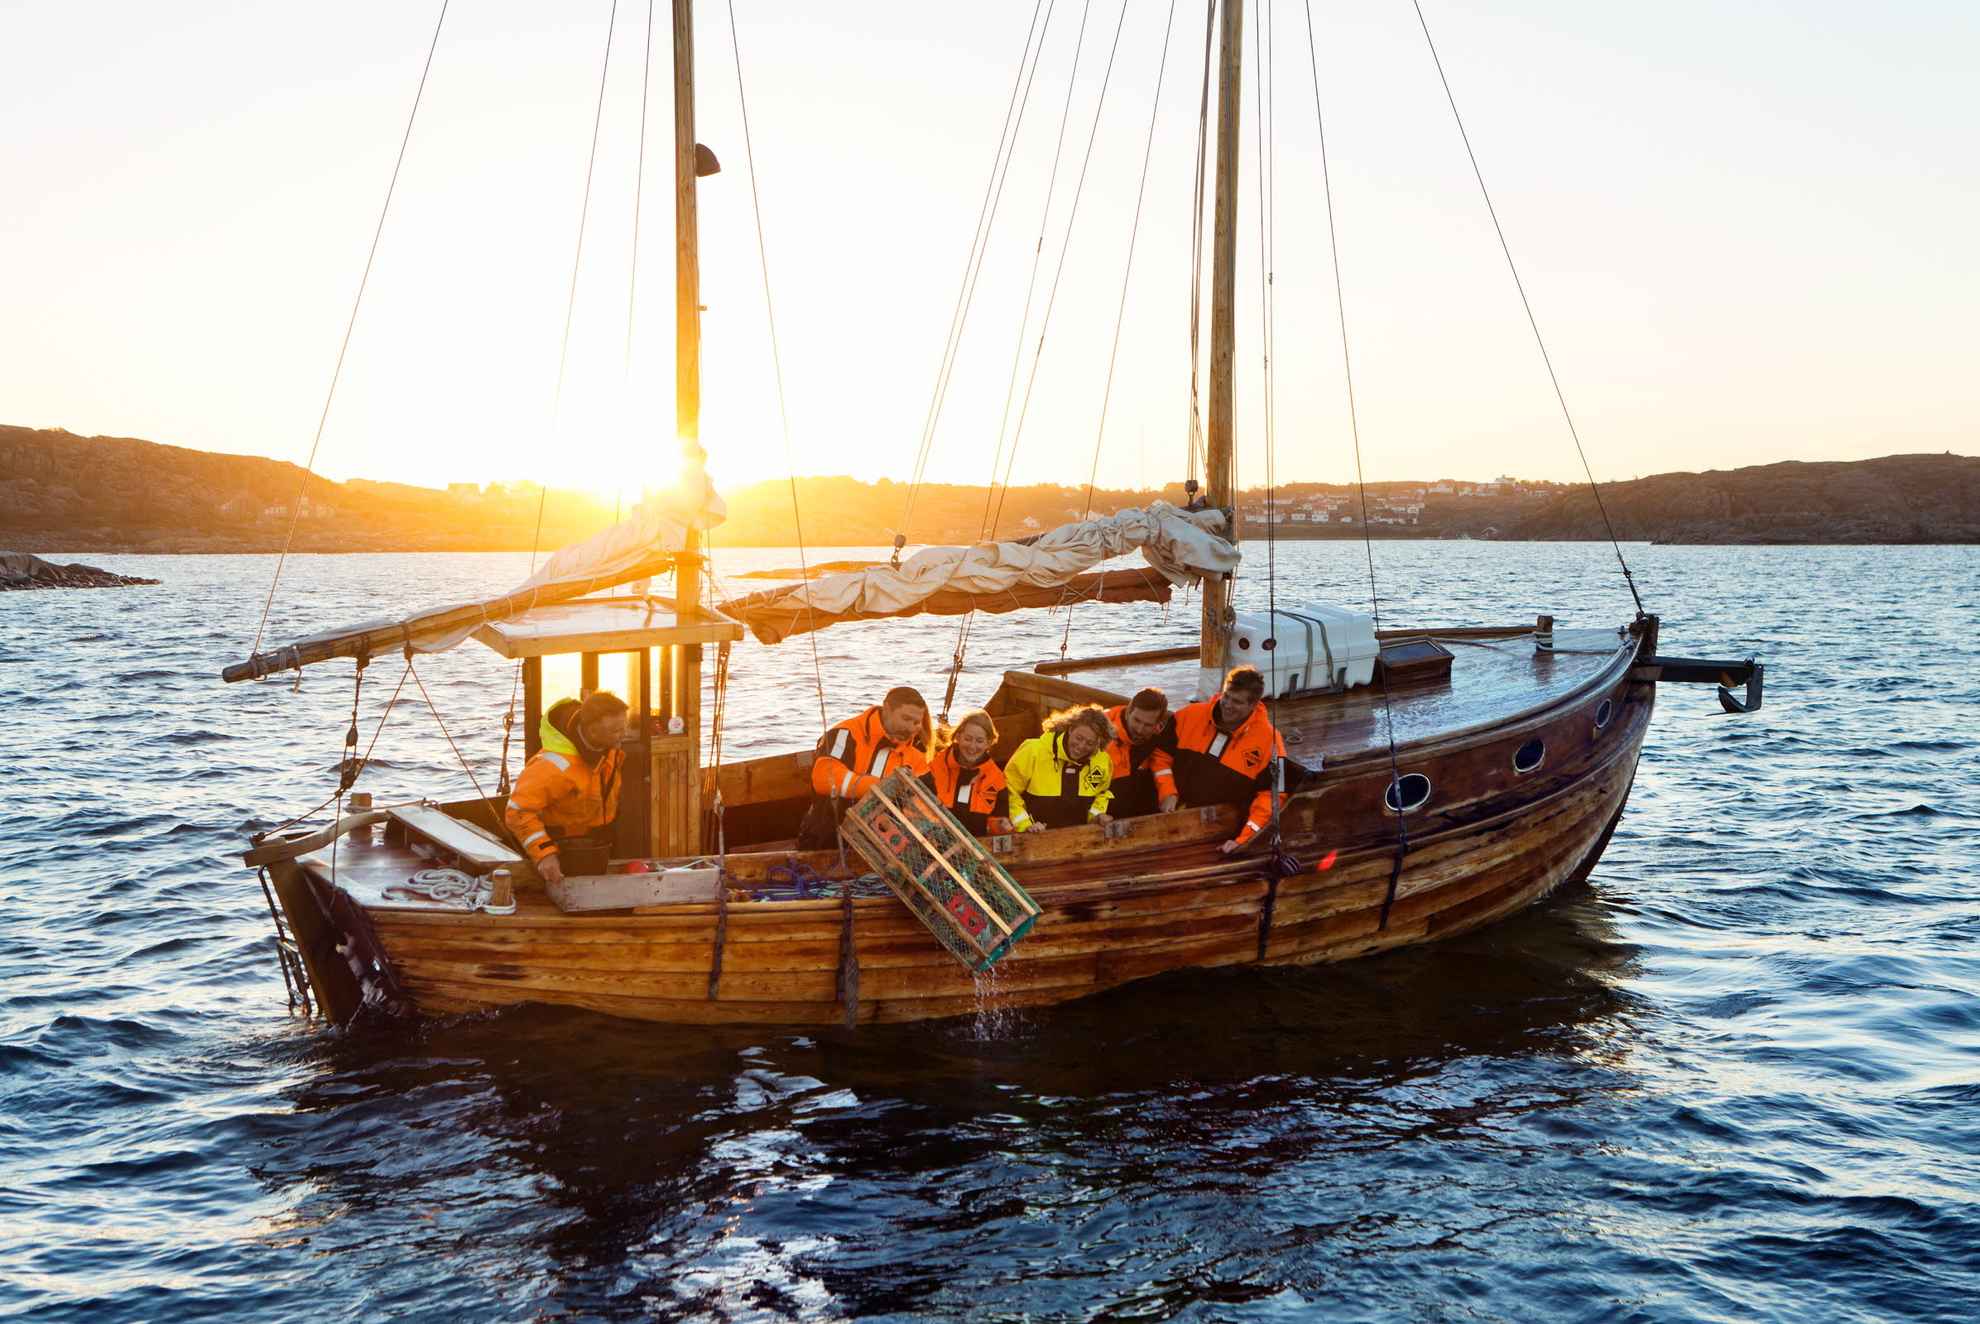 Ein hölzernes Segelboot mit sechs Personen, von denen eine gerade einen Hummerkäfig ins Meer wirft. Im Hintergrund geht die Sonne unter.